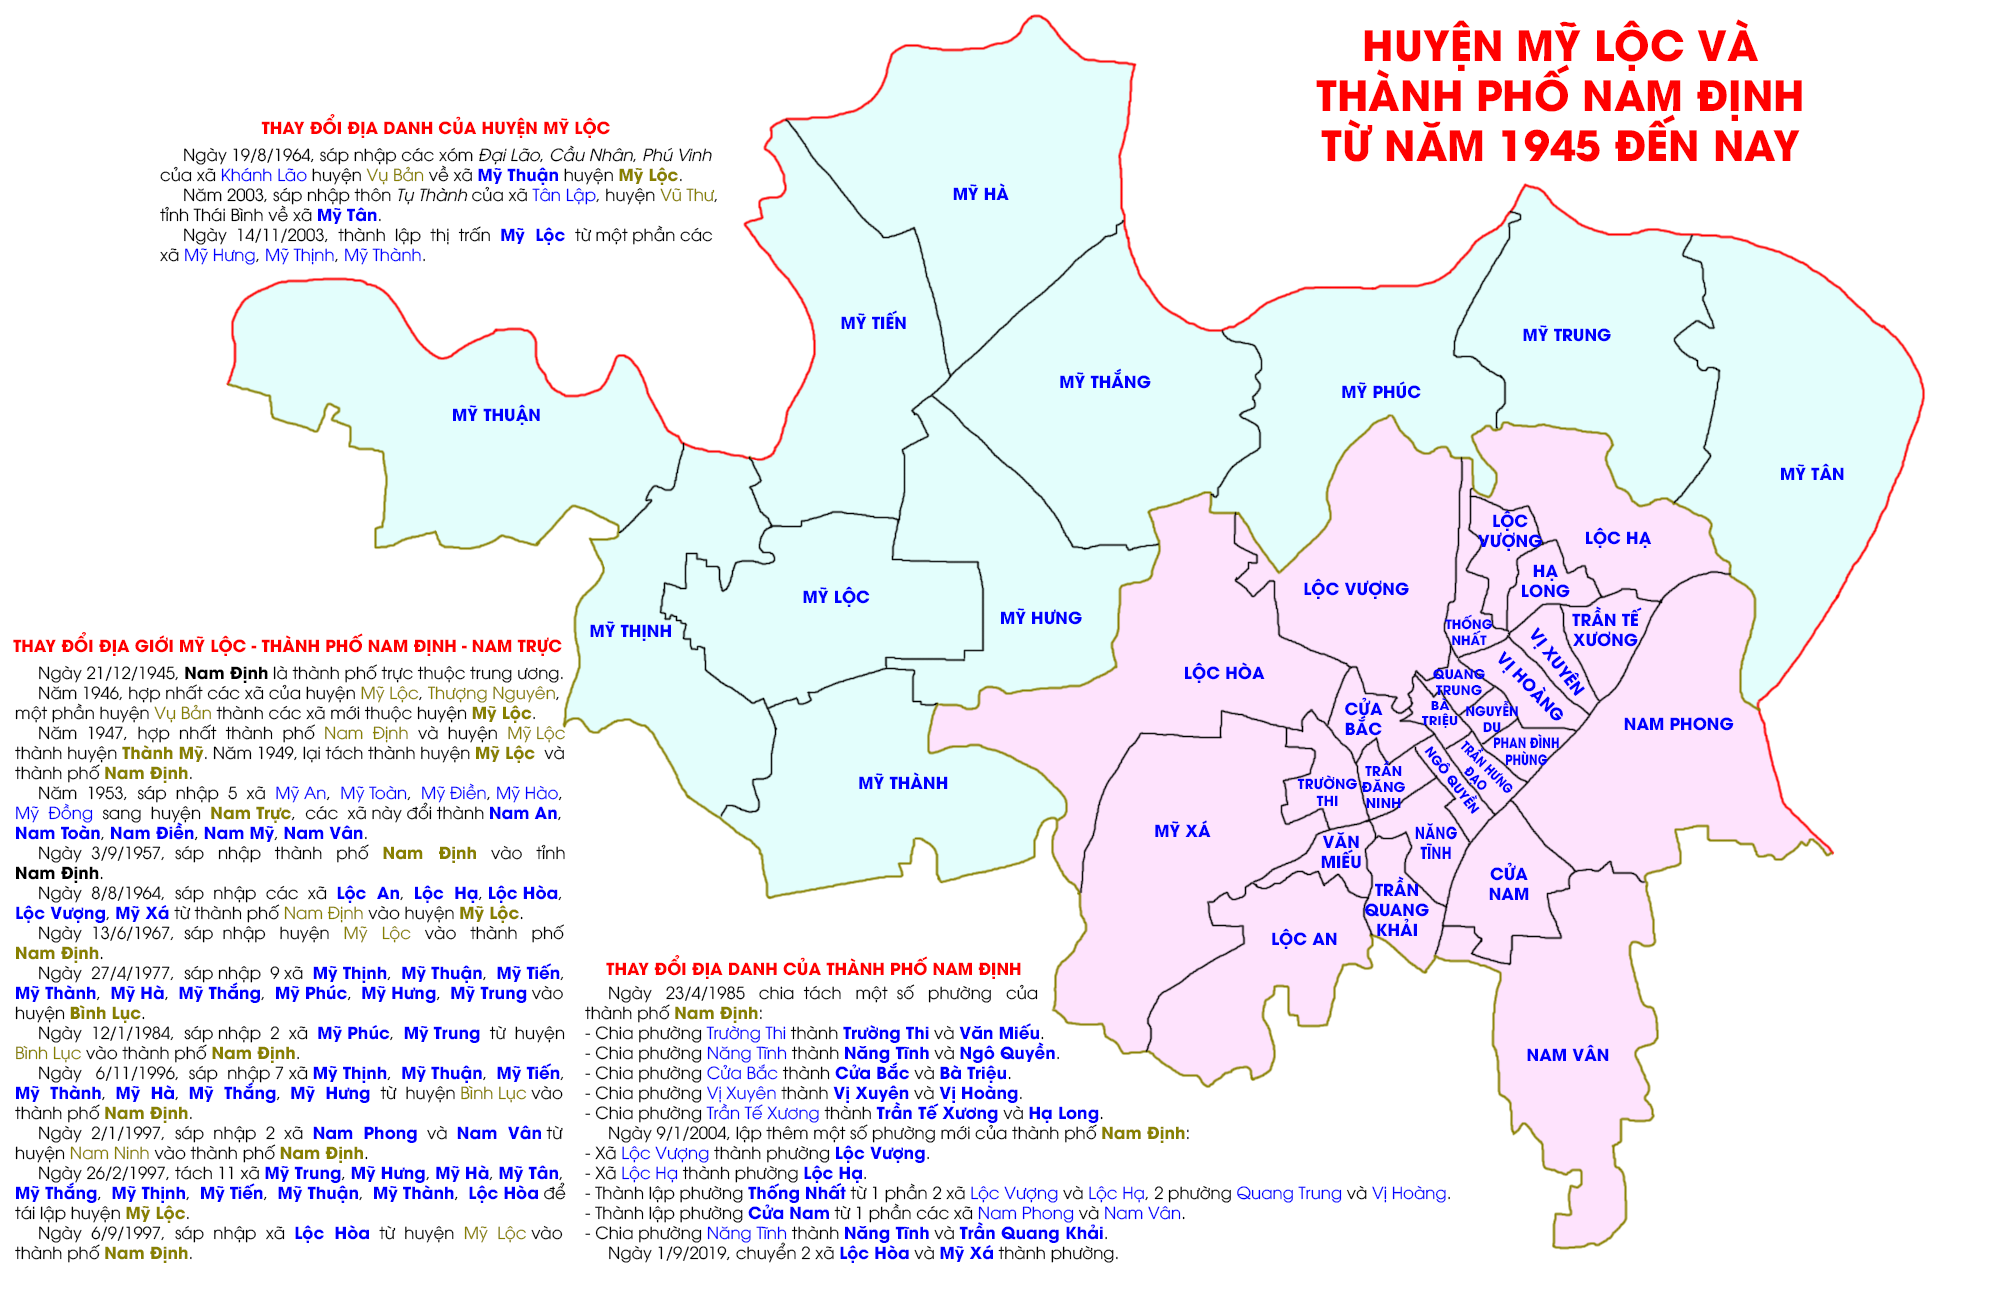 Địa danh huyện Mỹ Lộc và thành phố Nam Định từ năm 1945 đến nay